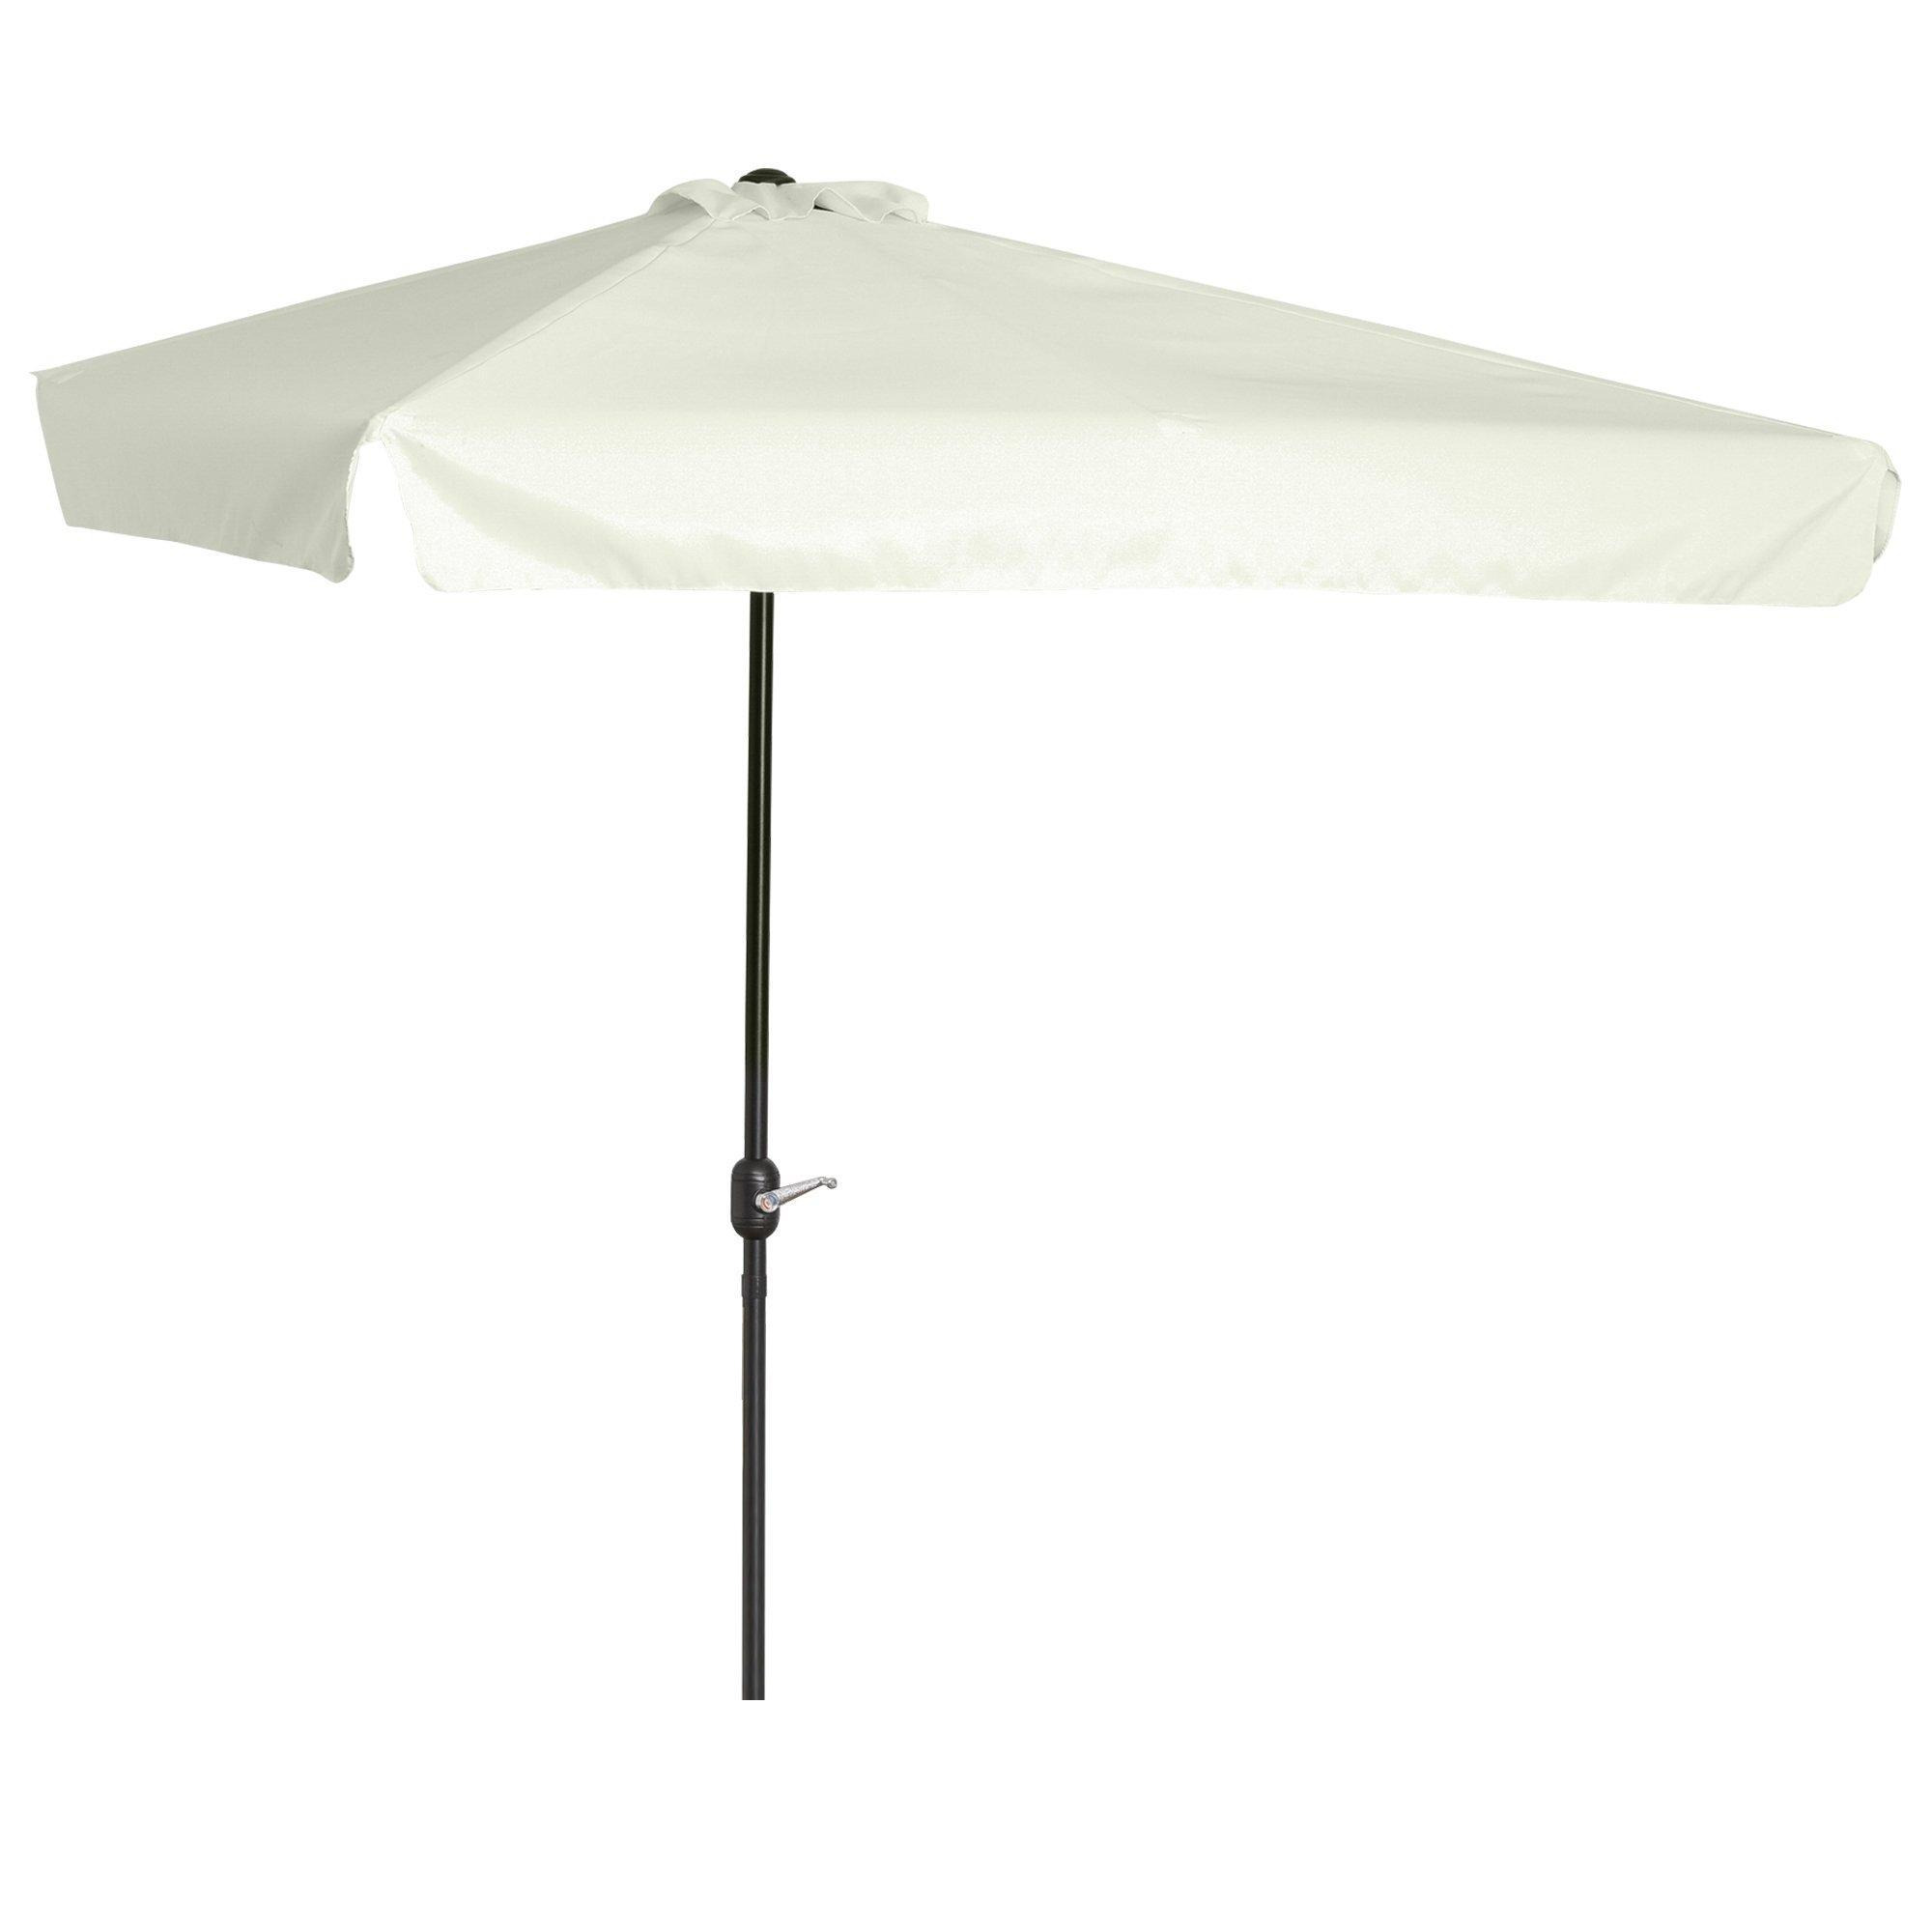 2.3m Half Round Parasol Umbrella Balcony Metal Frame Outdoor with Crank NO BASE - image 1